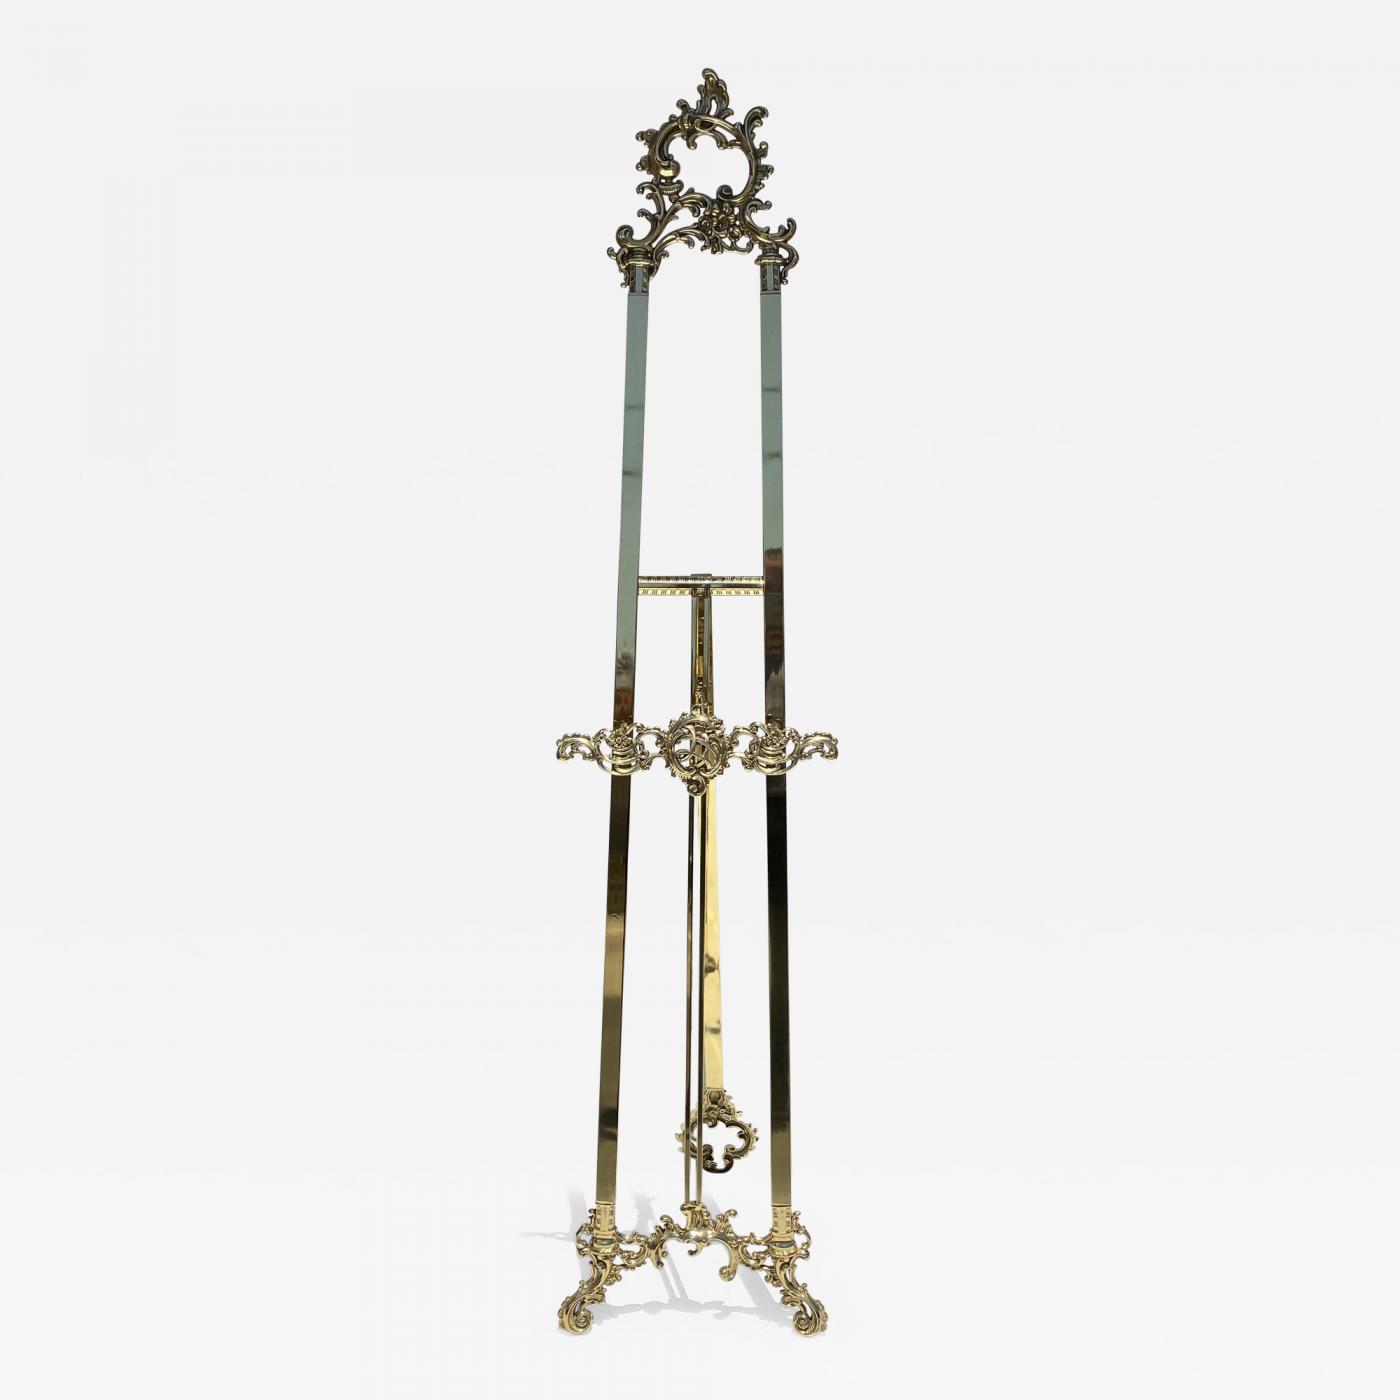 Floor Easel - Ornate Brass 55 or 71 Tall, Floor Easels